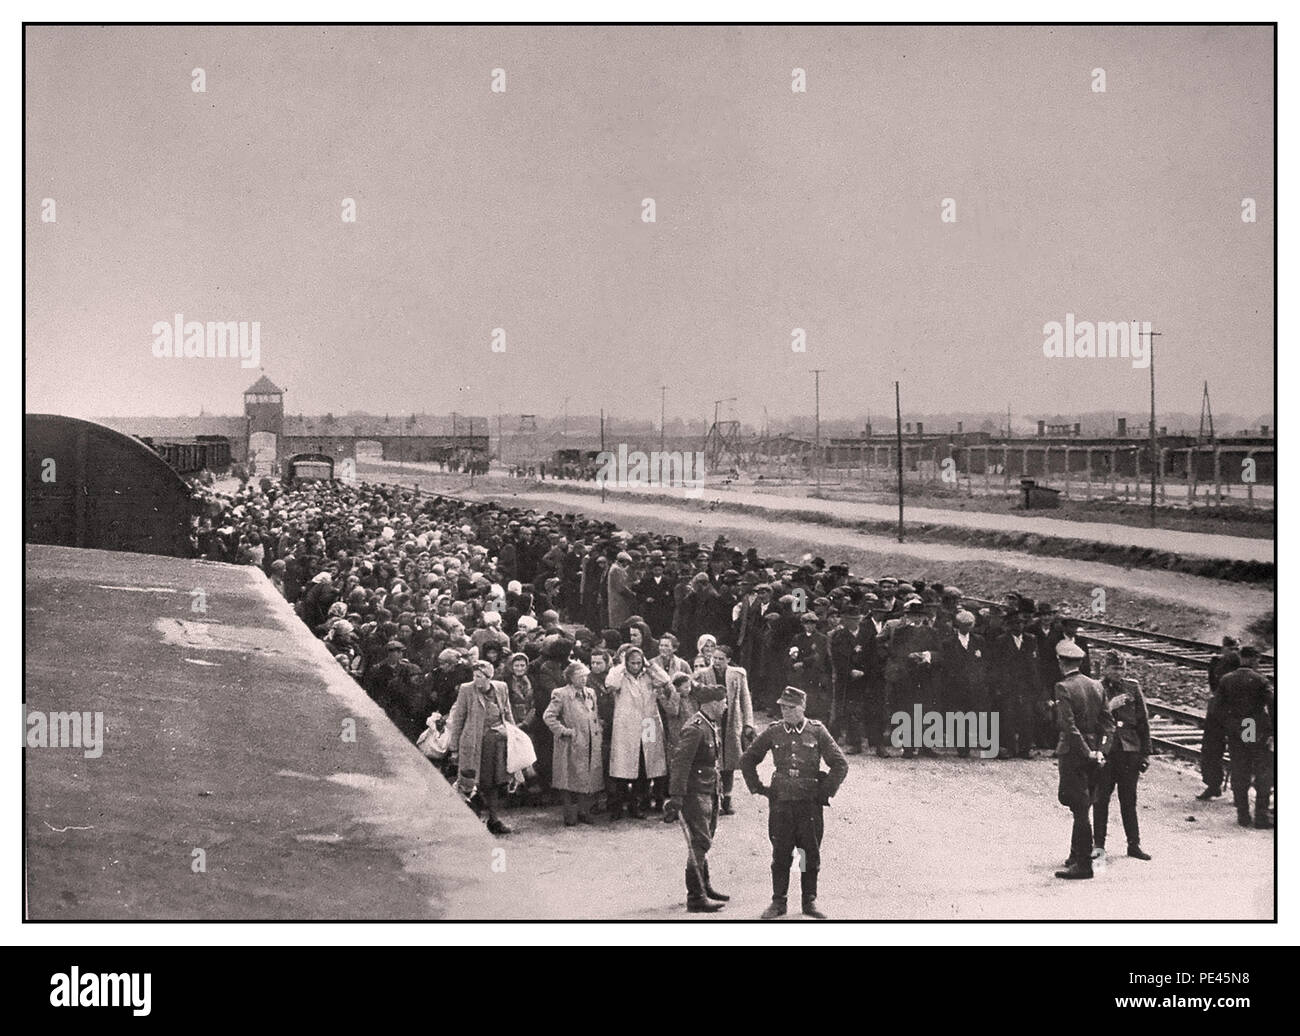 ANKUNFT DER HÄFTLINGE DES HOLOCAUST IN AUSCHWITZ-BIRKENAU--eine Vision der Hölle auf Erden. 1944. Nazis-Truppen in Militäruniform in Jackstiefeln "bewerten" (Leben oder Tod) ahnungslose männliche und weibliche Gefangene in der Bahnhofshalle vor dem Eingang zum Todeslager Auschwitz-Birkenau. Das berüchtigte Lager Auschwitz wurde auf Befehl von Adolf Hitler in den 1940er Jahren während der Besetzung Polens durch Nazideutschland im 2. Weltkrieg gegründet. Heinrich Luitpold Himmler, der Reichsführer des Schutzpersonals und führendes Mitglied der Nazi-Partei Deutschlands, hat es mit Begeisterung ermöglicht. Stockfoto